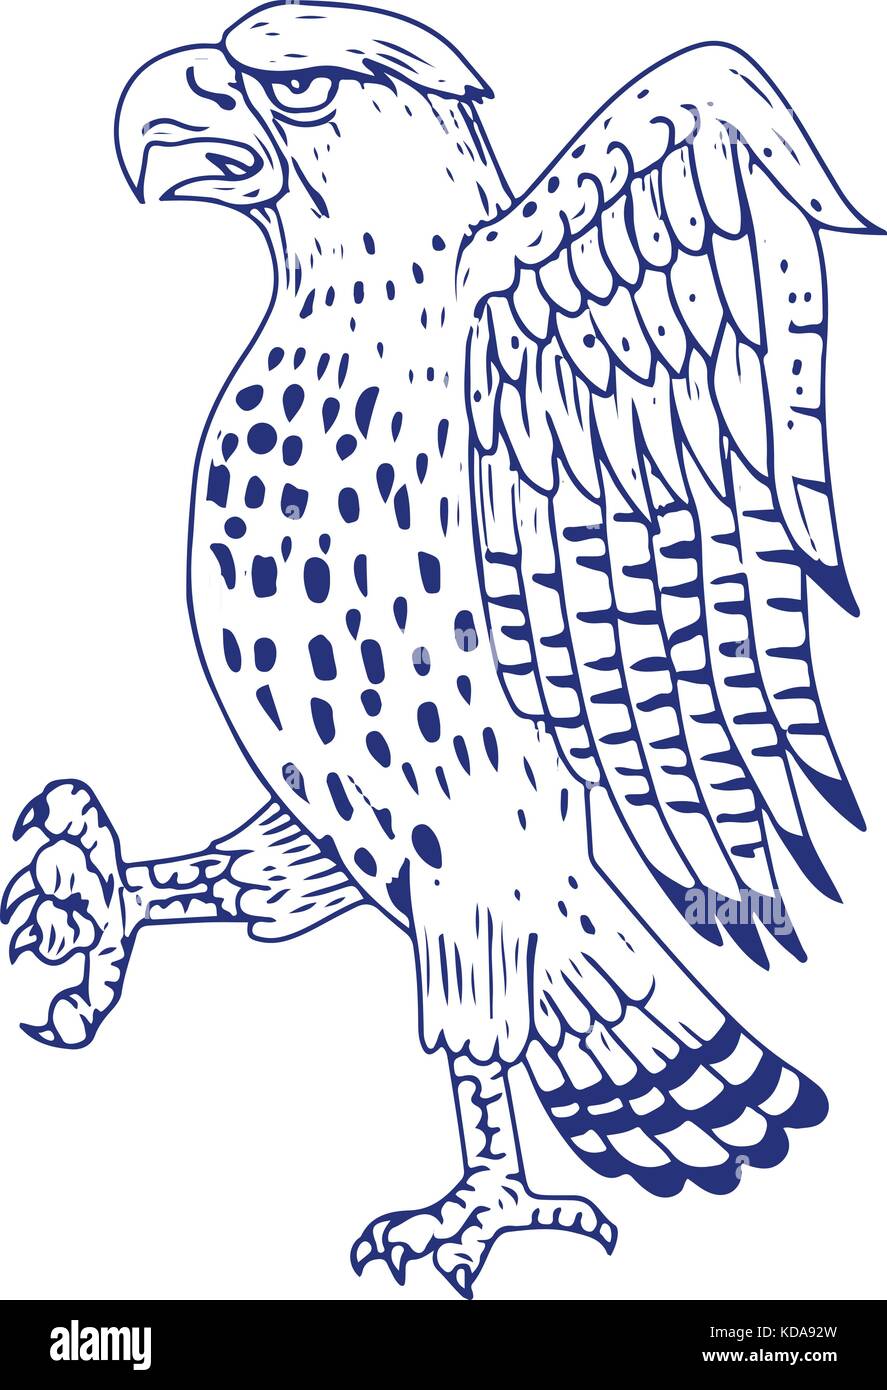 Croquis dessin illustration d'un style l'épervier brun, une espèce d'oiseau de proie diurne de la famille des accipitridae marchant vue latérale sur des b Illustration de Vecteur